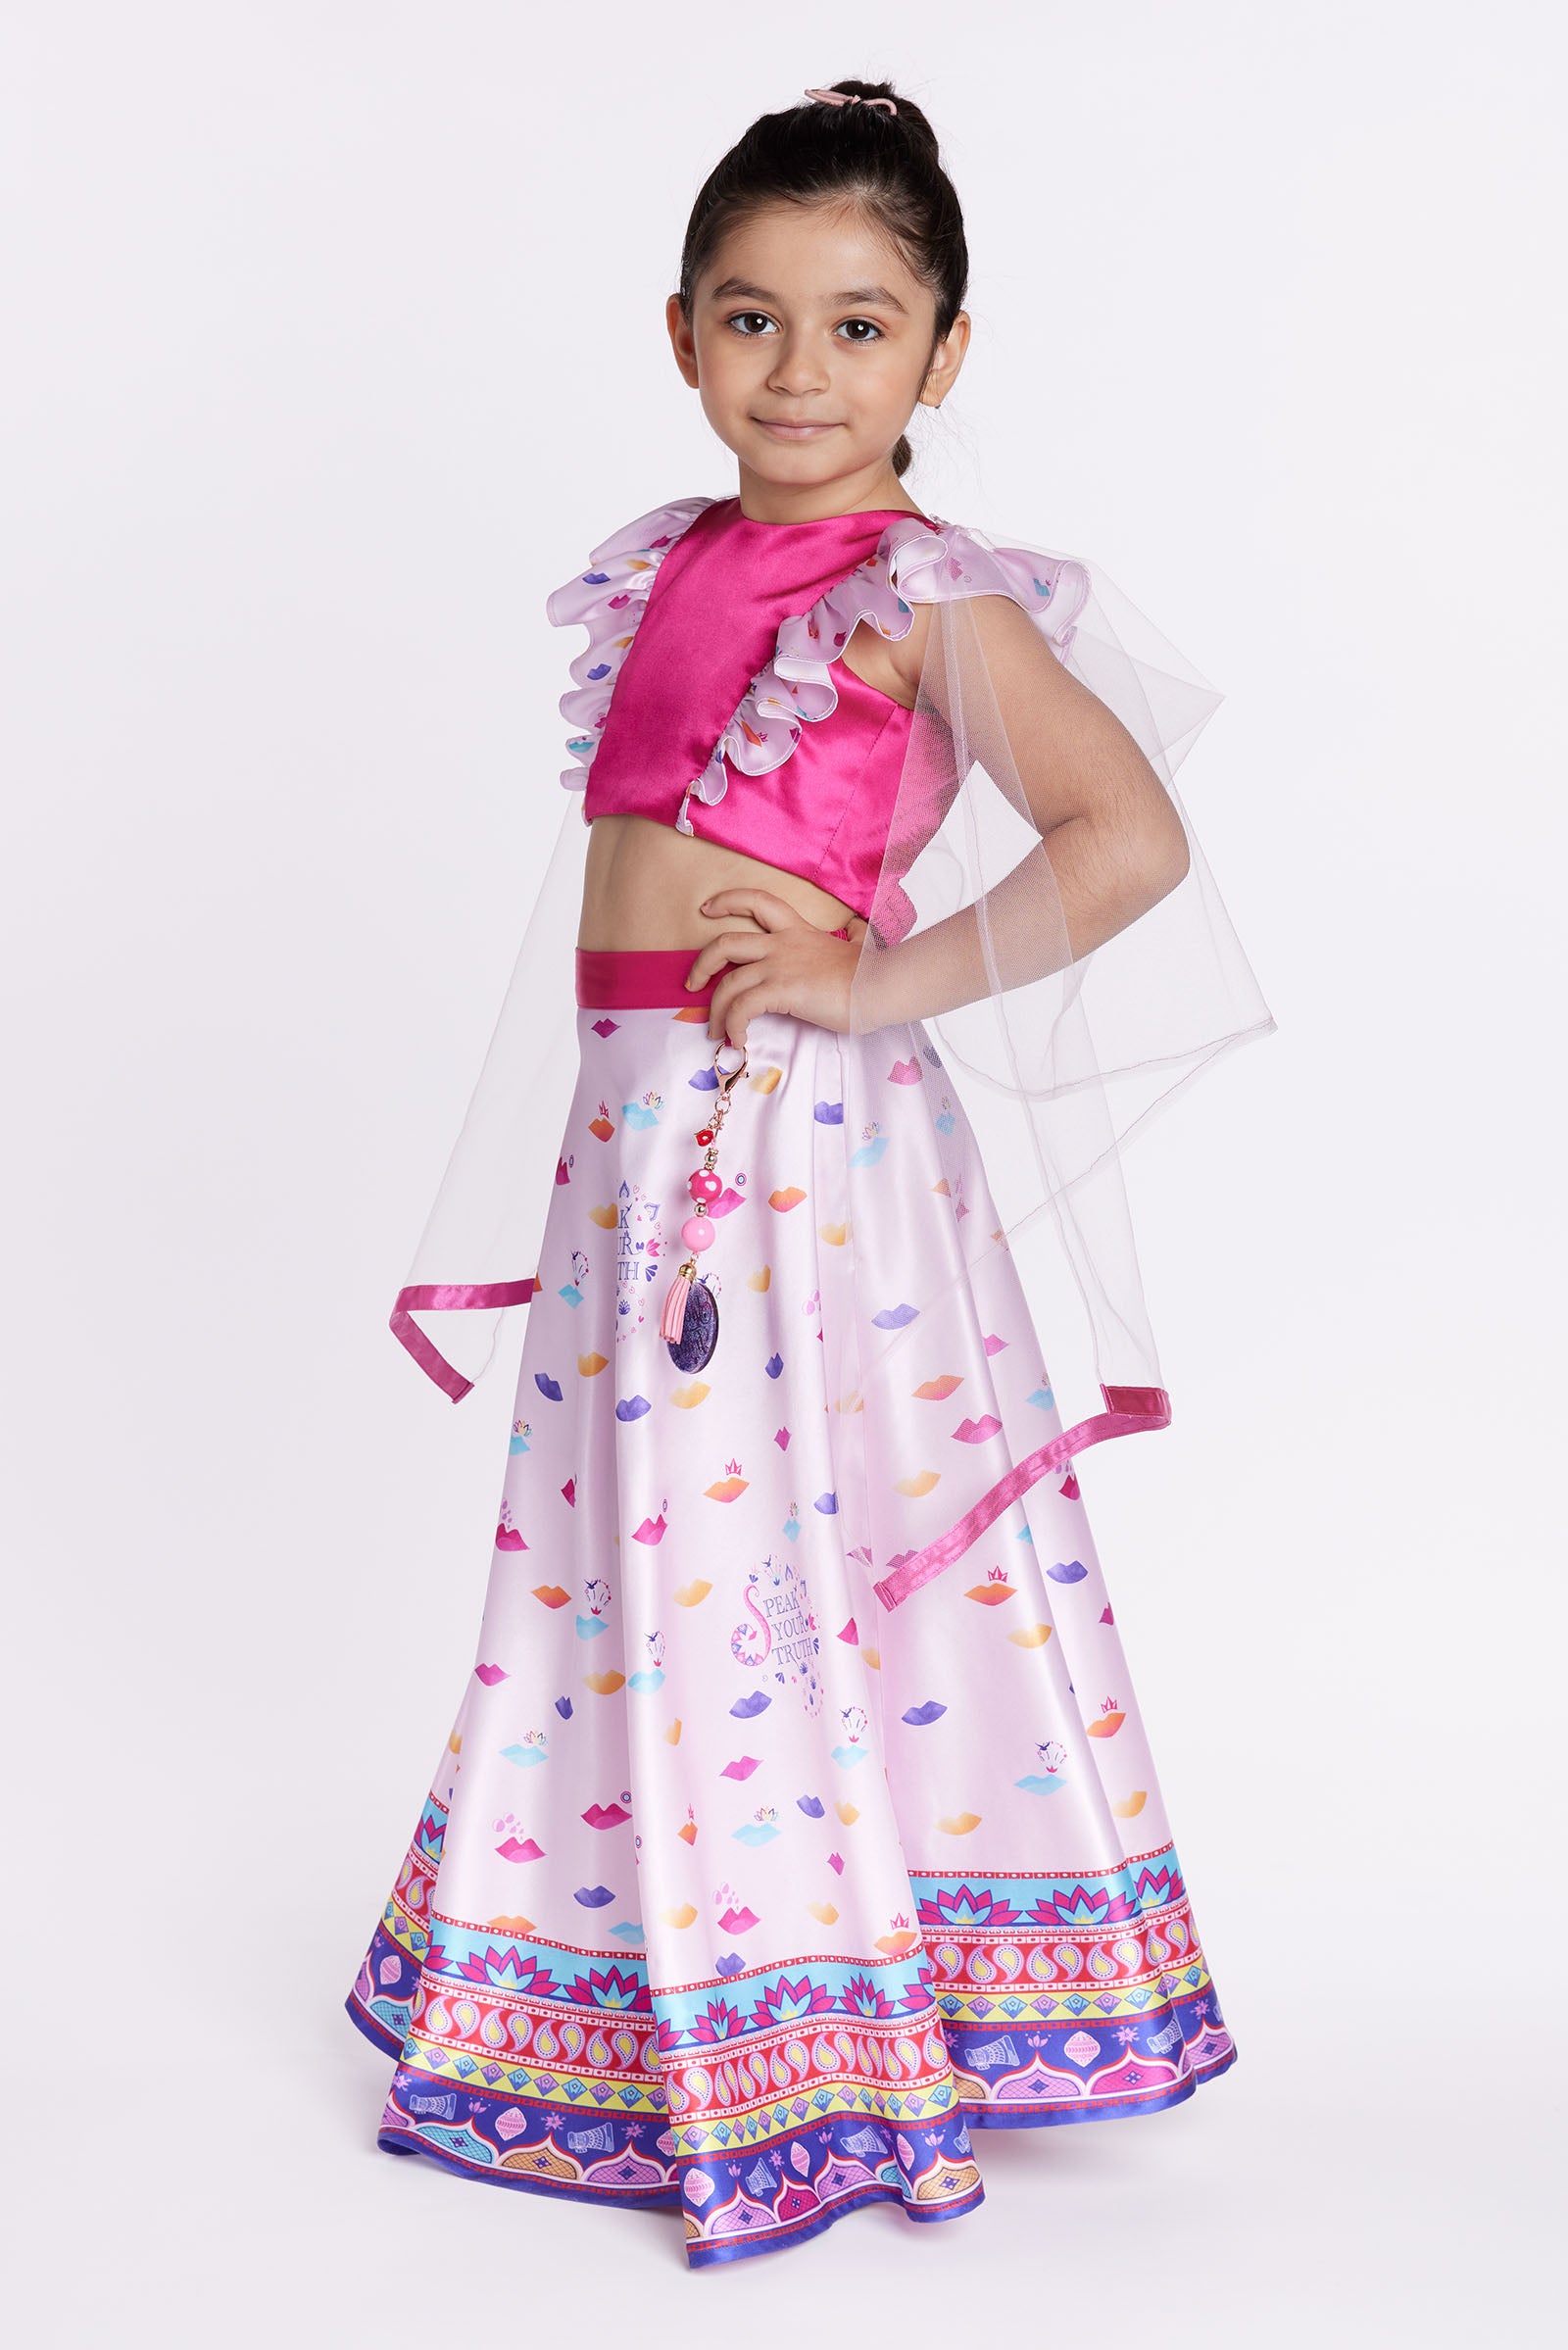 Girl wearing pink lehenga party dress front posing